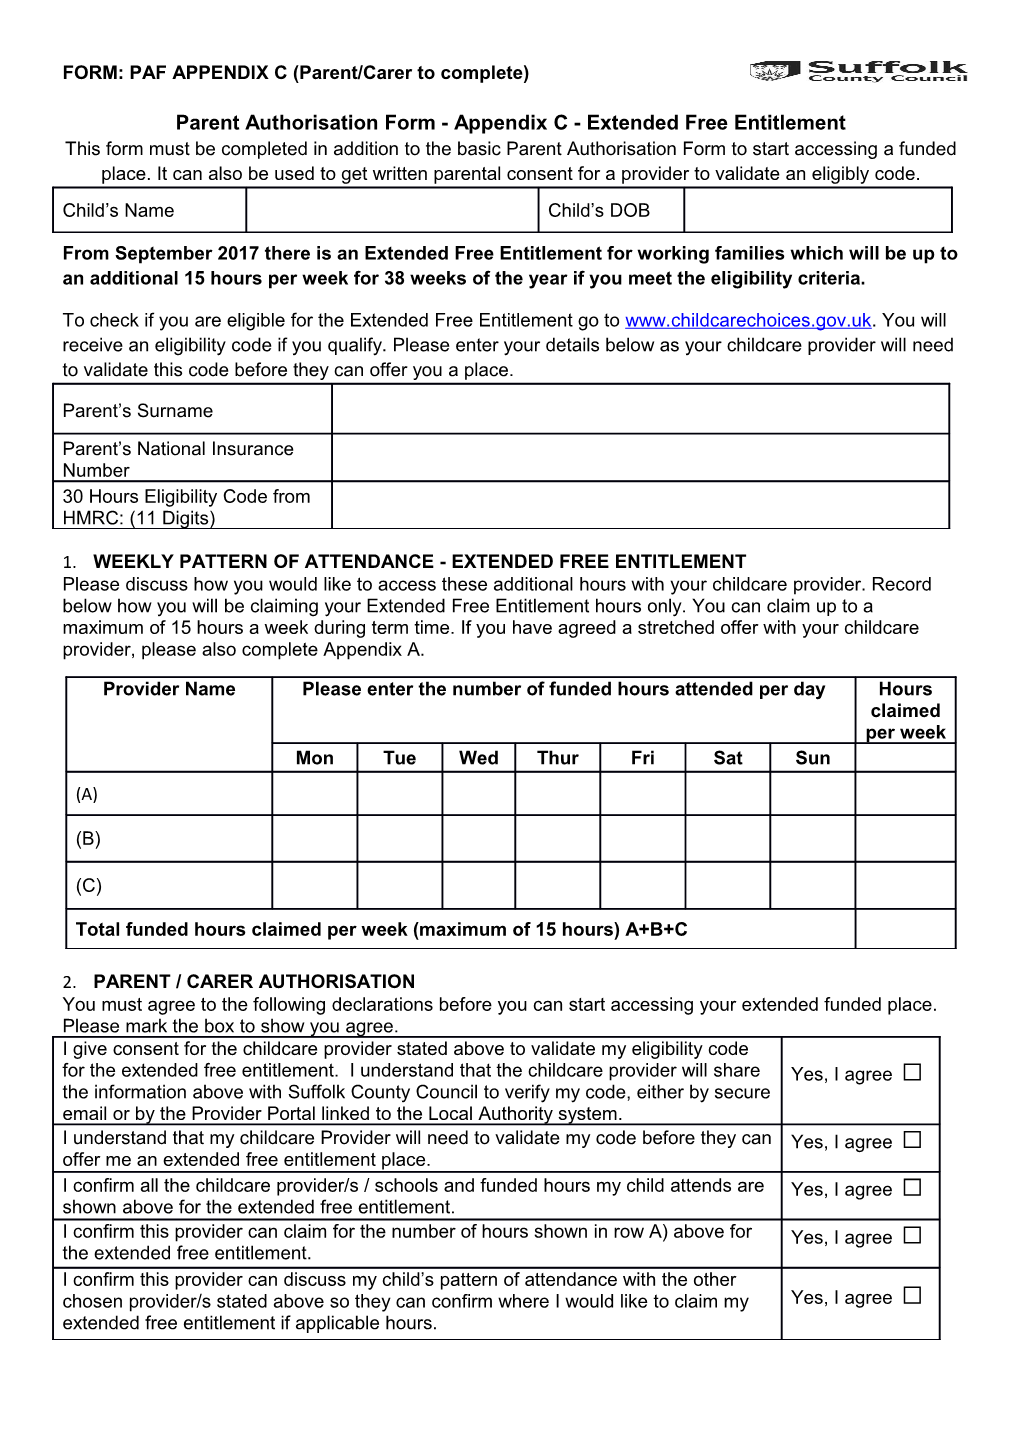 Parent Authorisation Form - Appendix C- Extended Free Entitlement